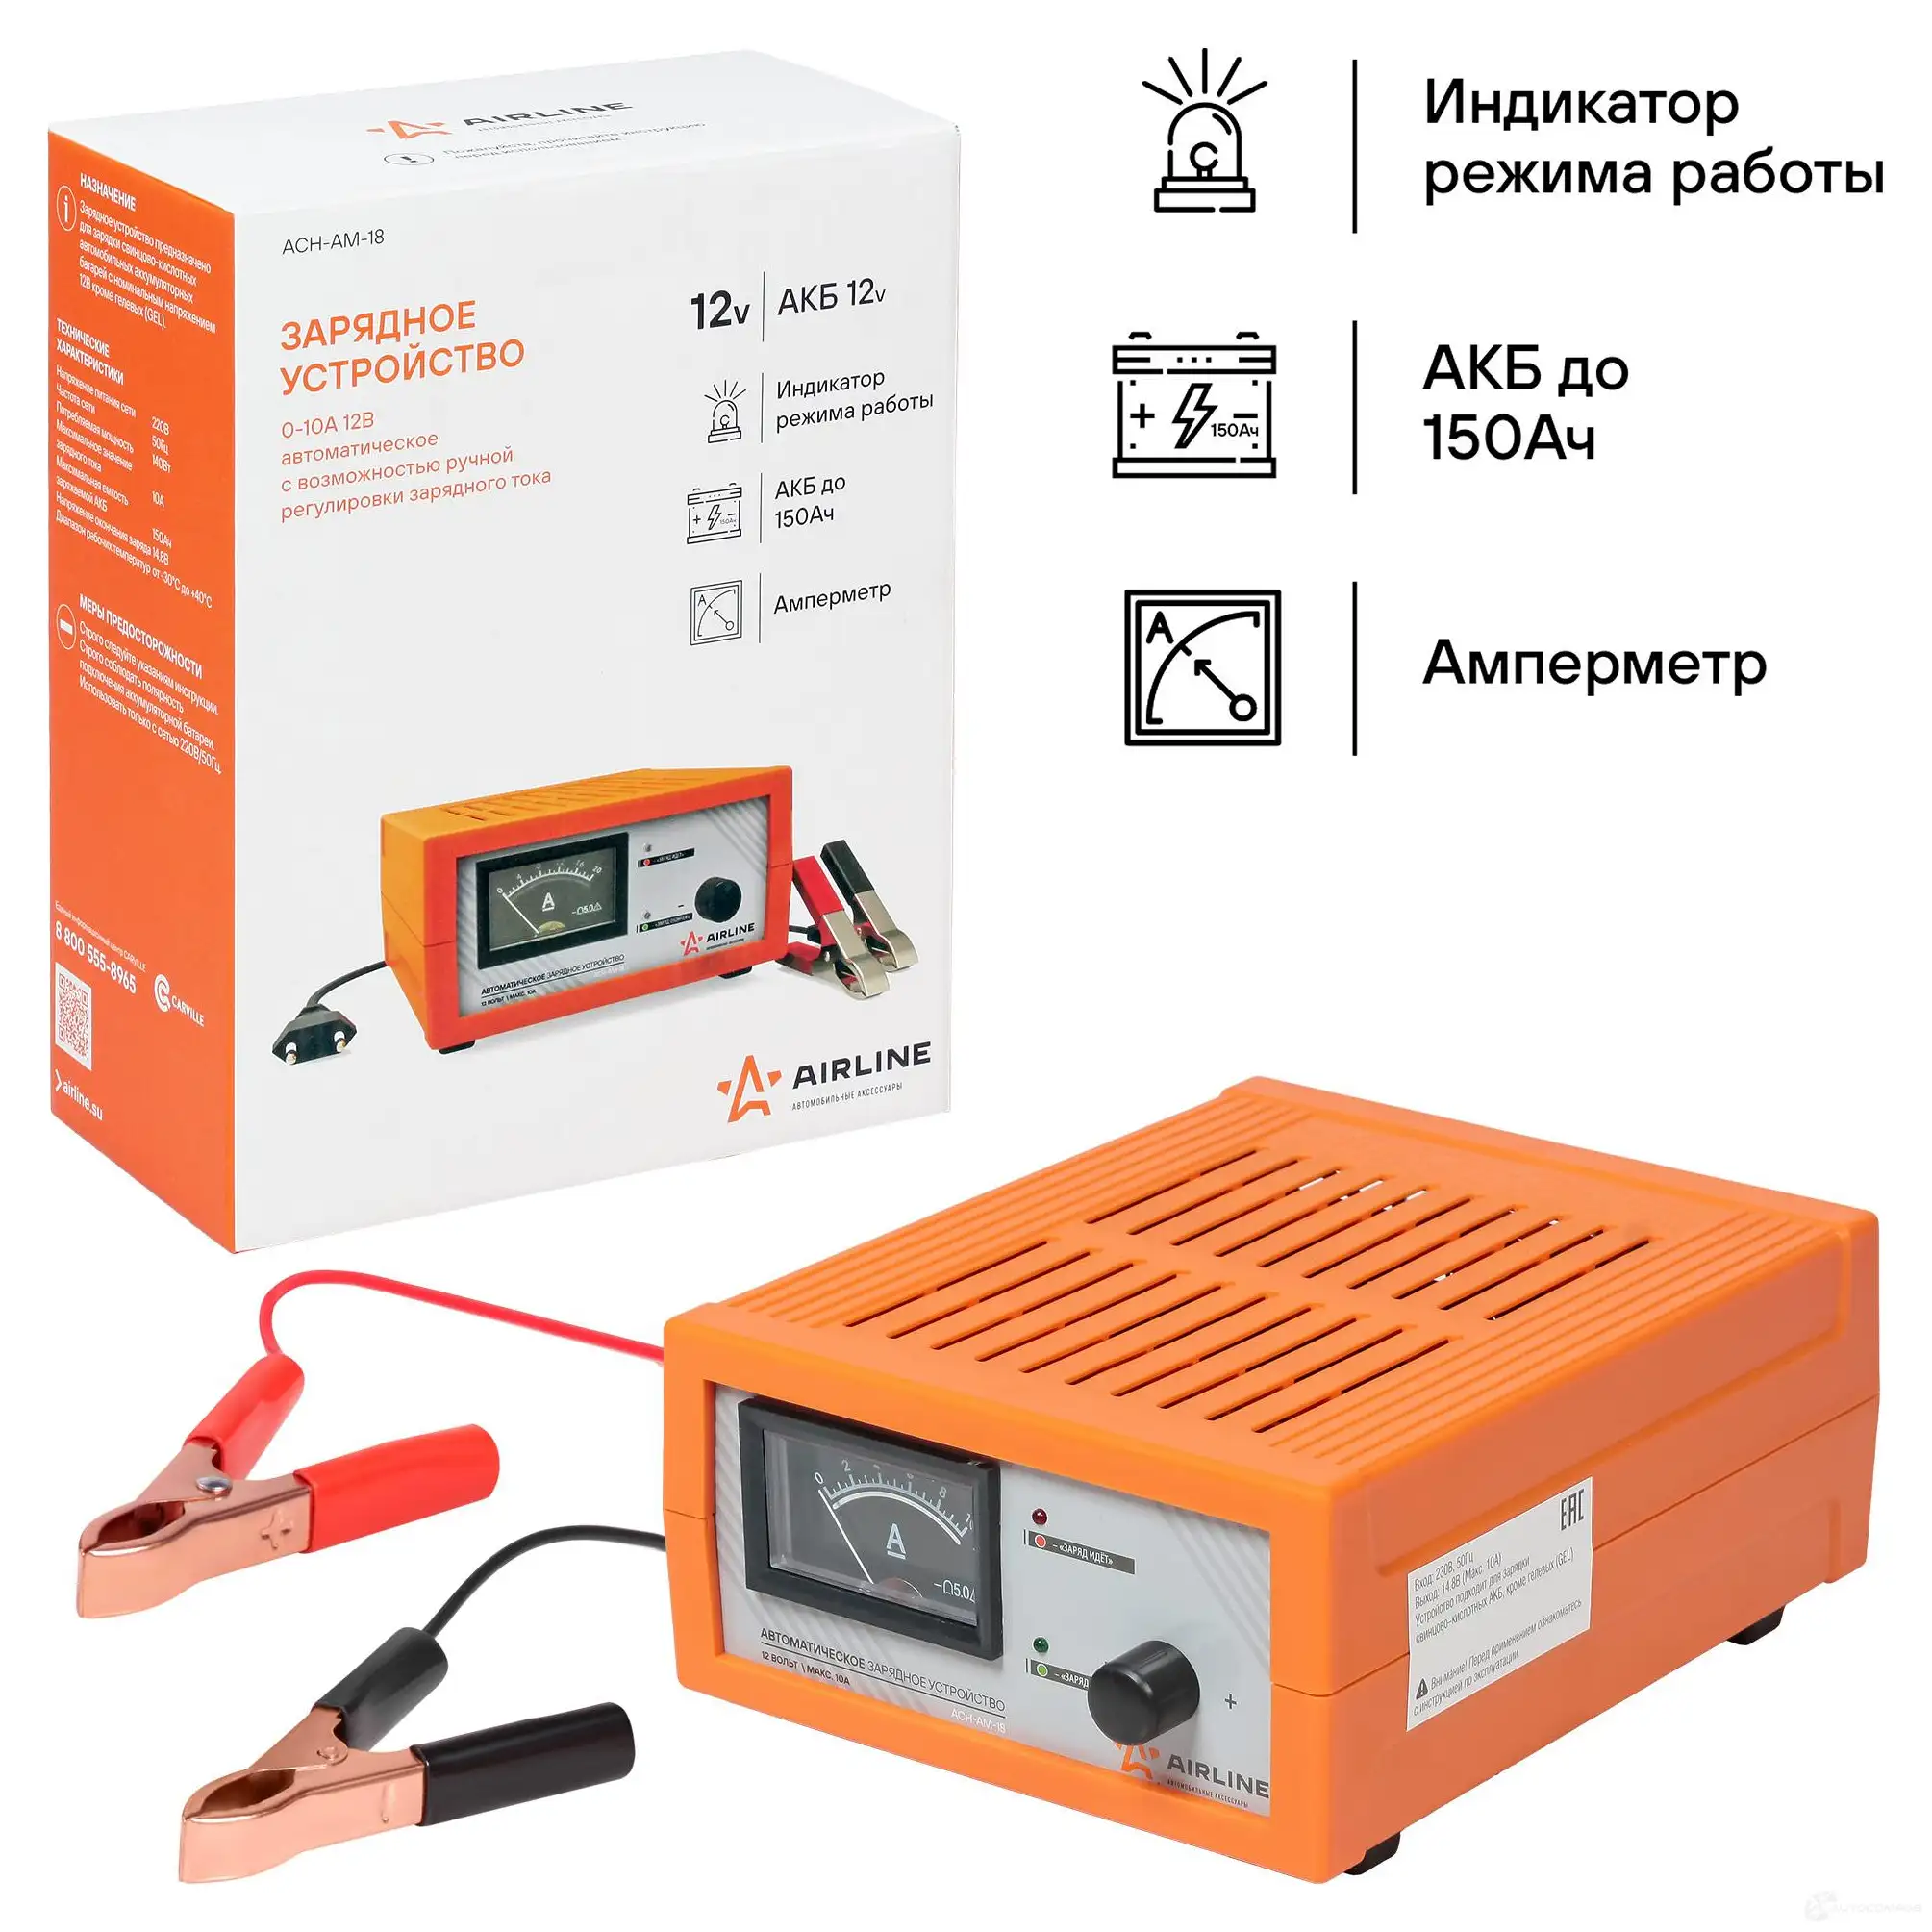 Зарядное устройство 0-10А 12В, амперметр, ручная регулировка зарядного тока, импульсное AIRLINE A5C7 W5R 1438172732 acham18 изображение 1